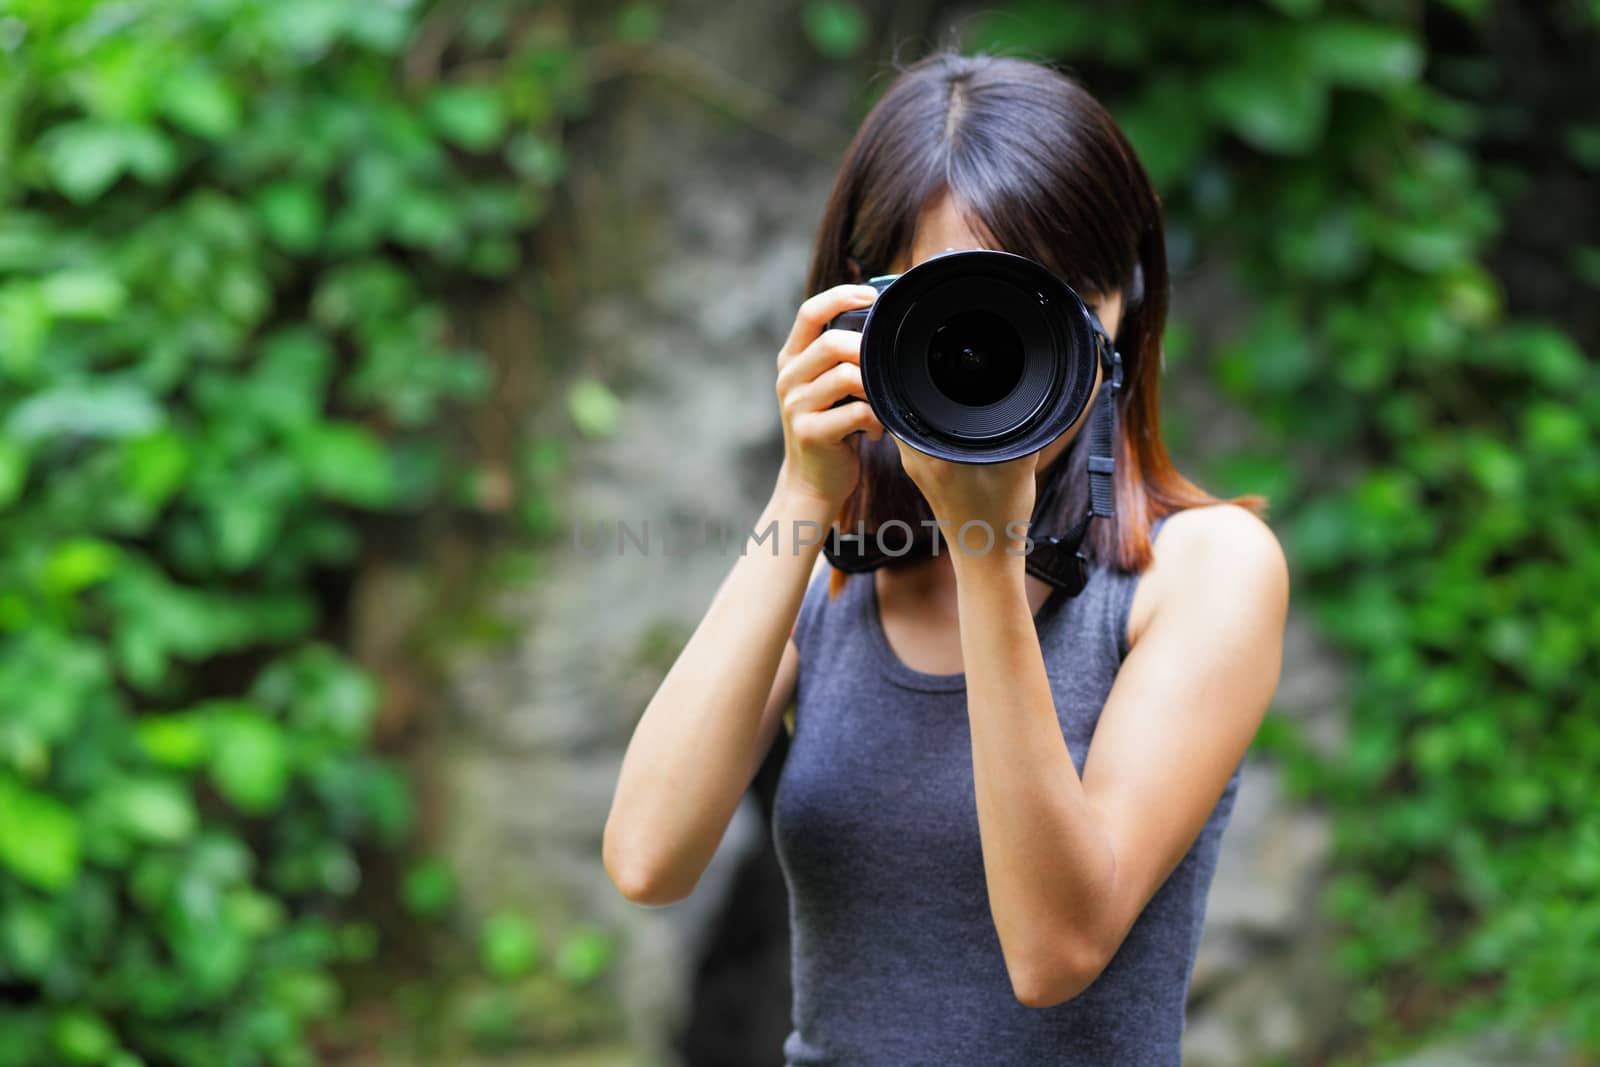 Asian woman taking photo by leungchopan